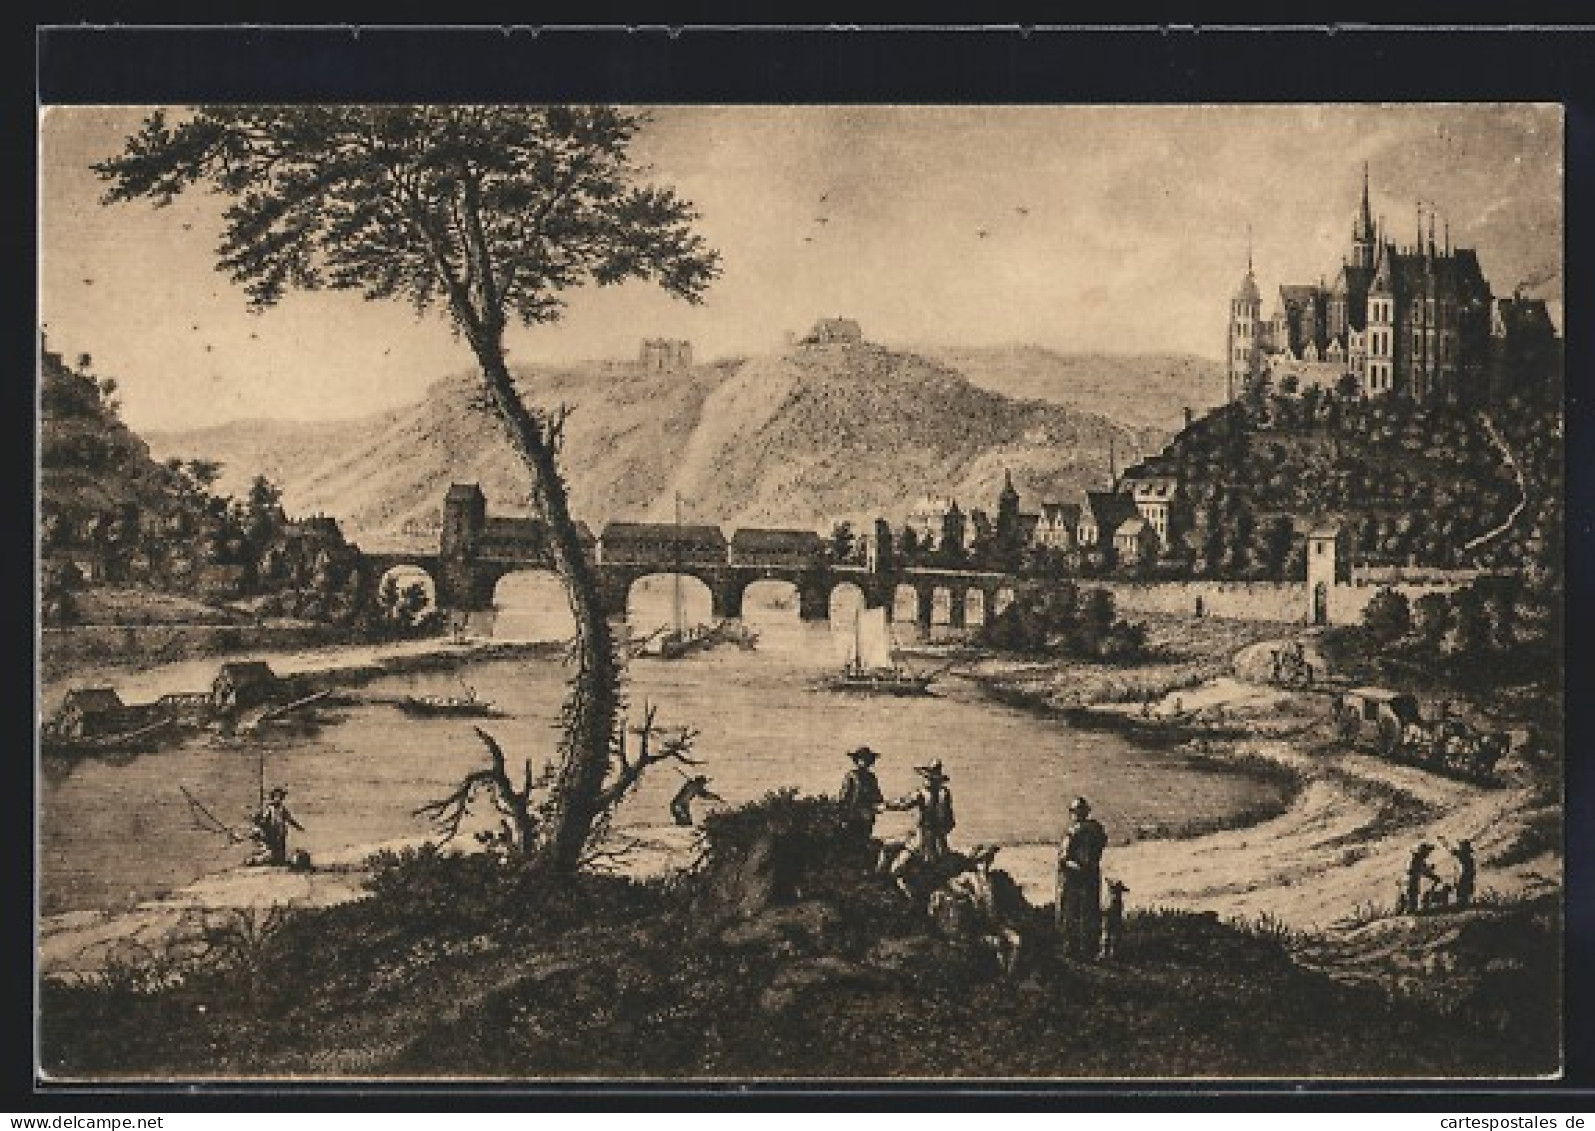 Künstler-AK Alt-Meissen, Panorama Im Jahre 1776  - Meissen